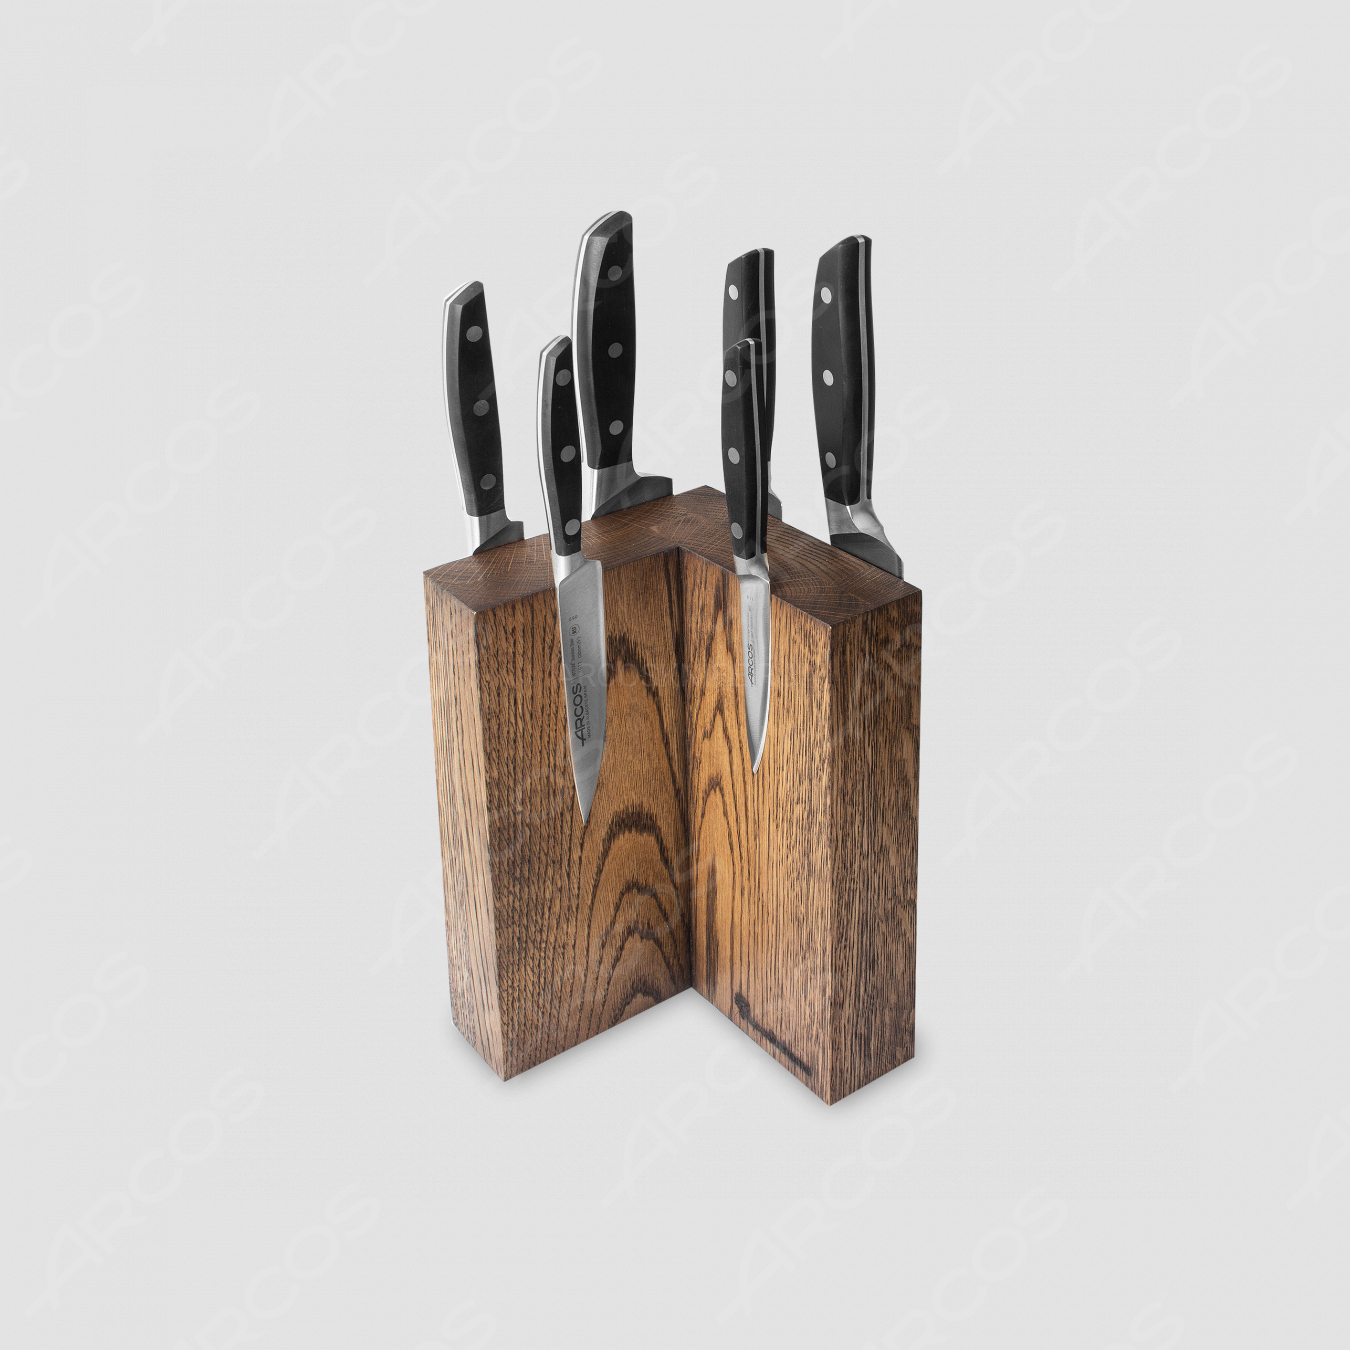 Набор из 6-ти кухонных ножей на подставке из дуба, серия Manhattan, ARCOS, Испания